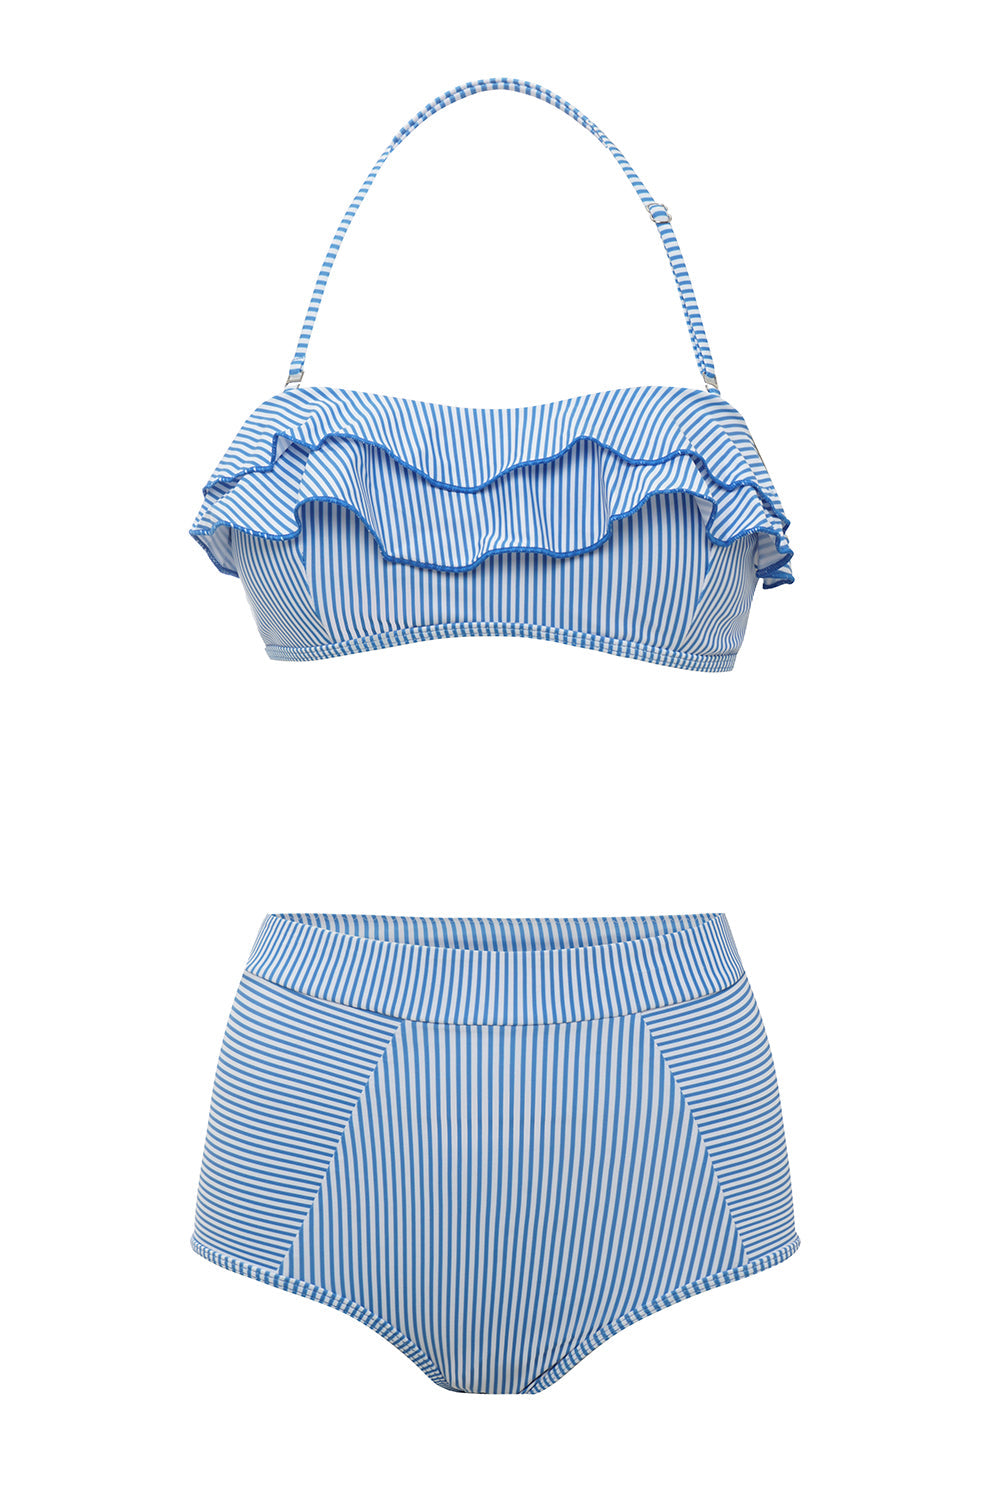 Blaue Streifen zweiteiliger Bikini